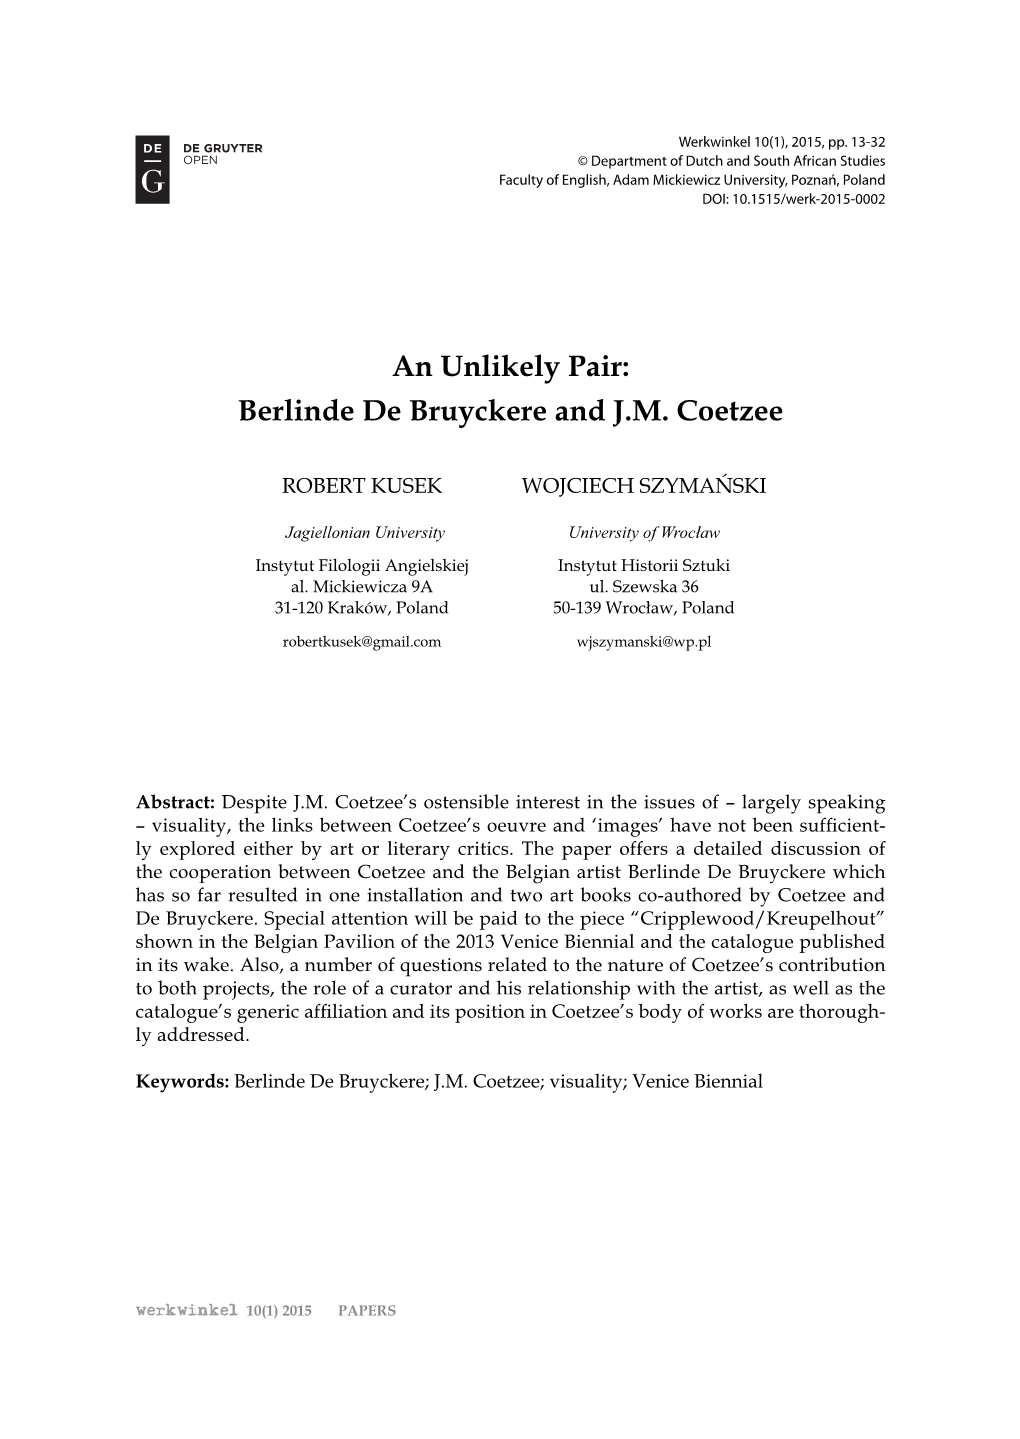 An Unlikely Pair: Berlinde De Bruyckere and J.M. Coetzee